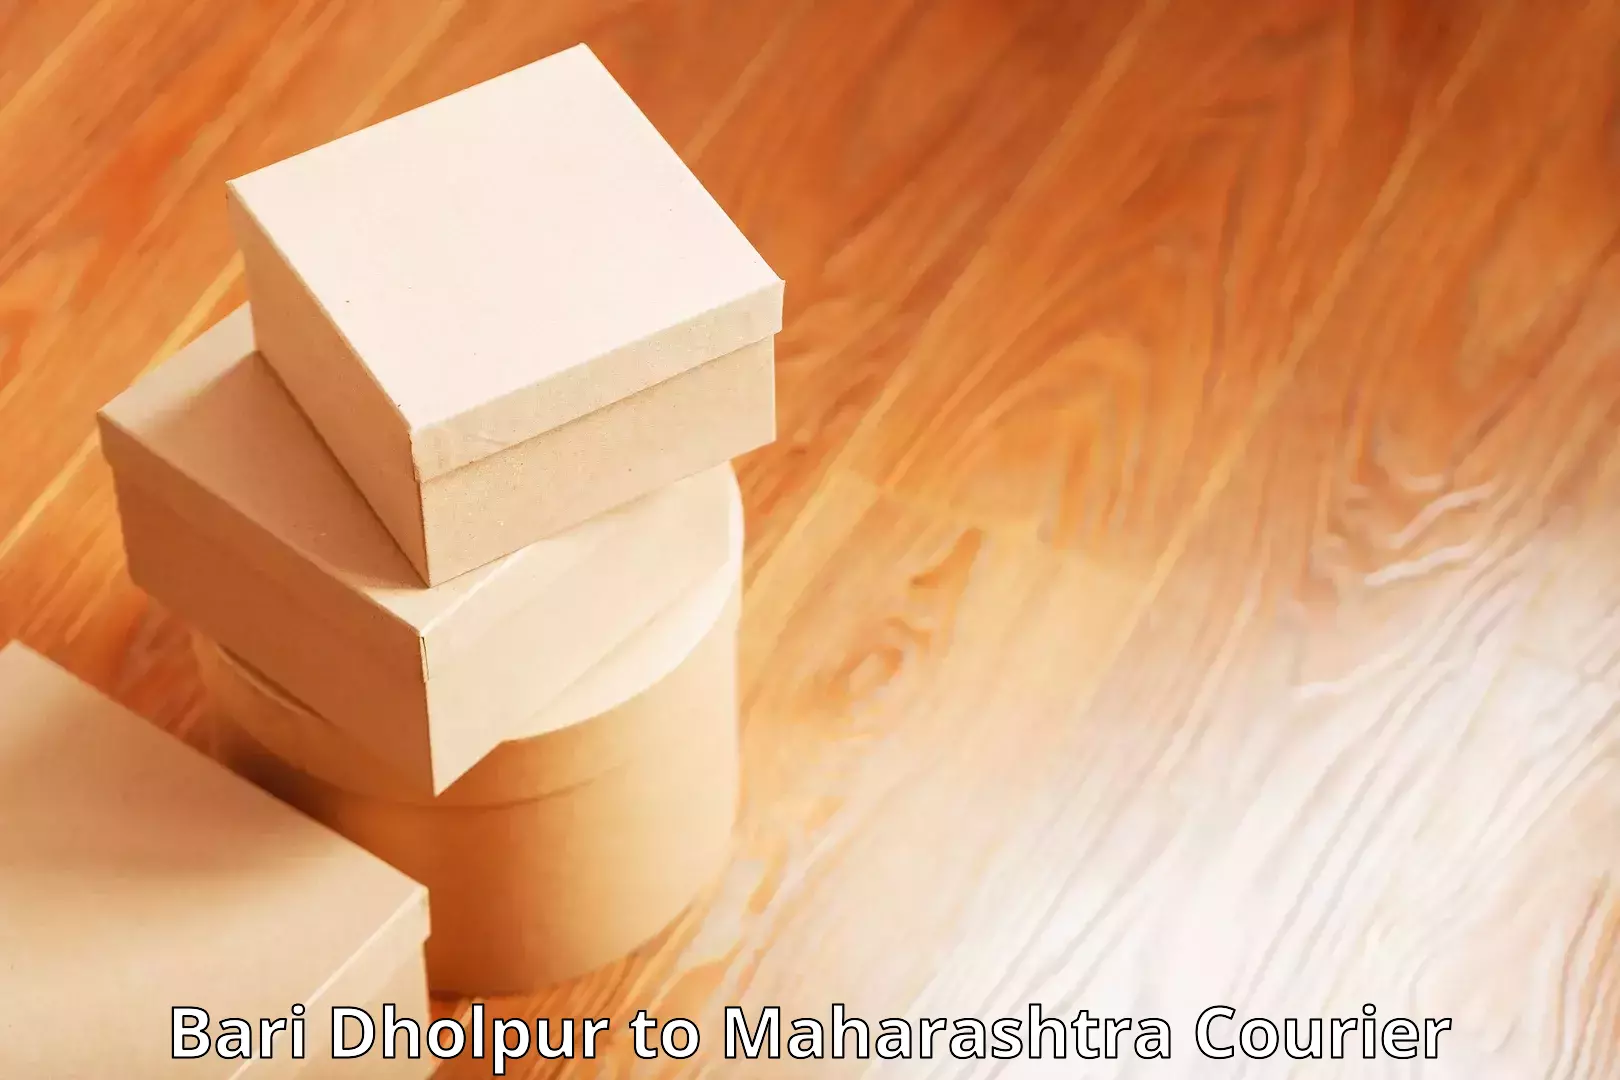 Bulk courier orders Bari Dholpur to Ahmedpur